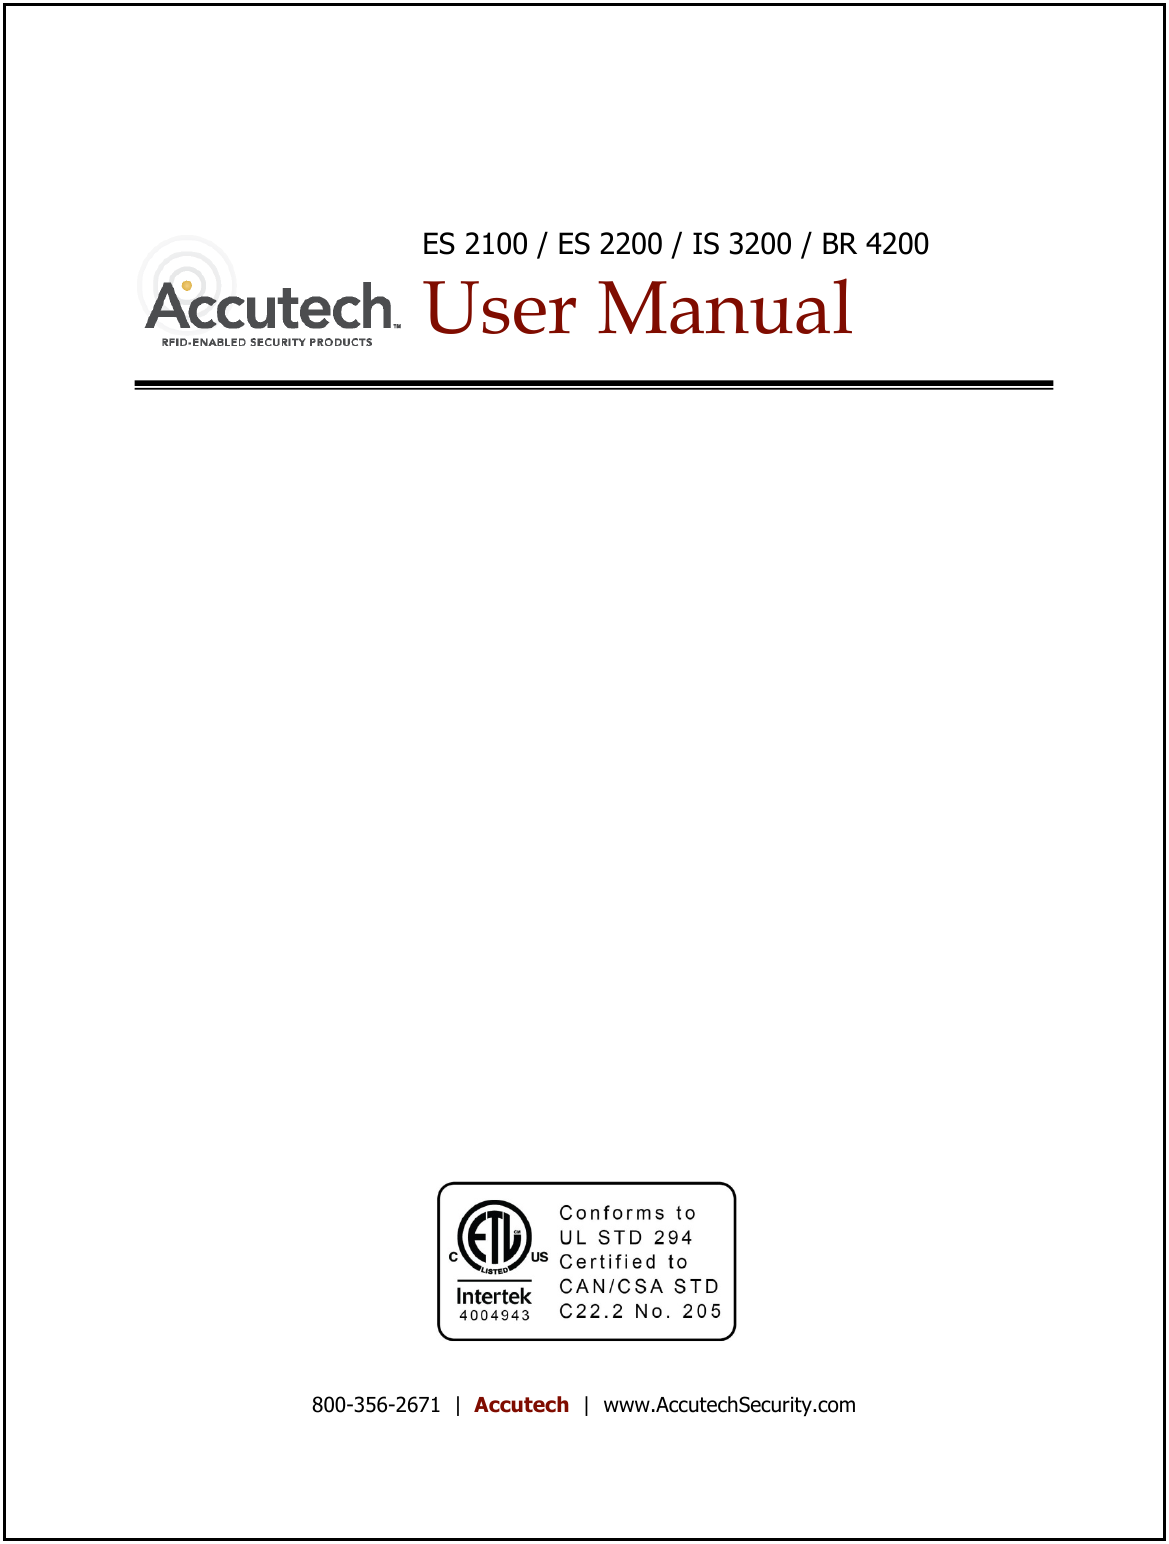    ES 2100 / ES 2200 / IS 3200 / BR 4200 User Manual                            800-356-2671  |  Accutech  |  www.AccutechSecurity.com   